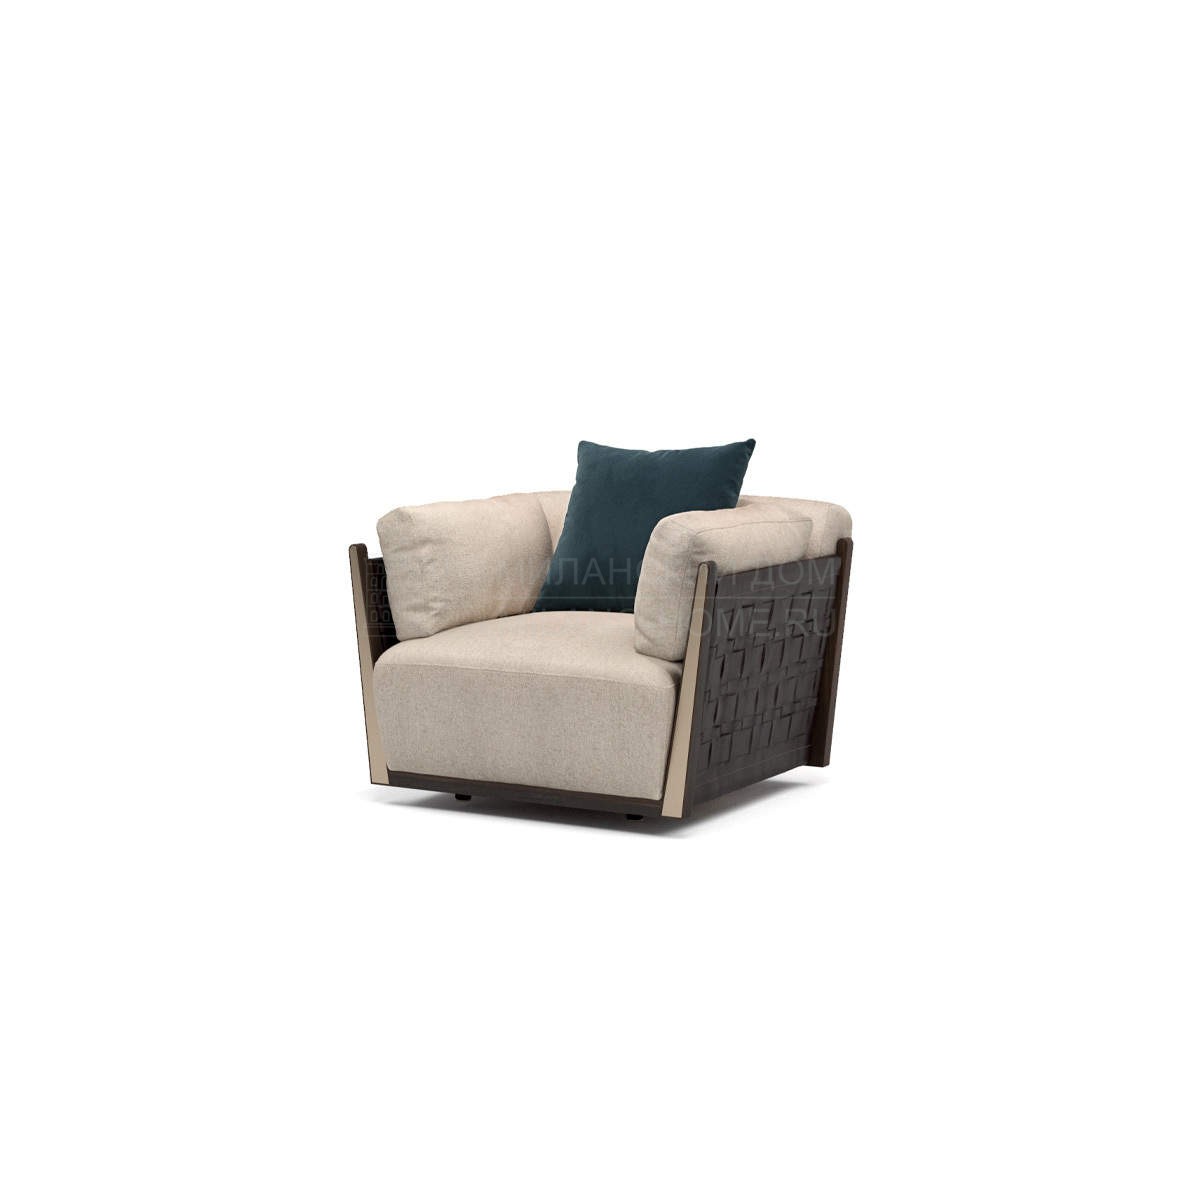 Кресло Net armchair из Италии фабрики TURRI